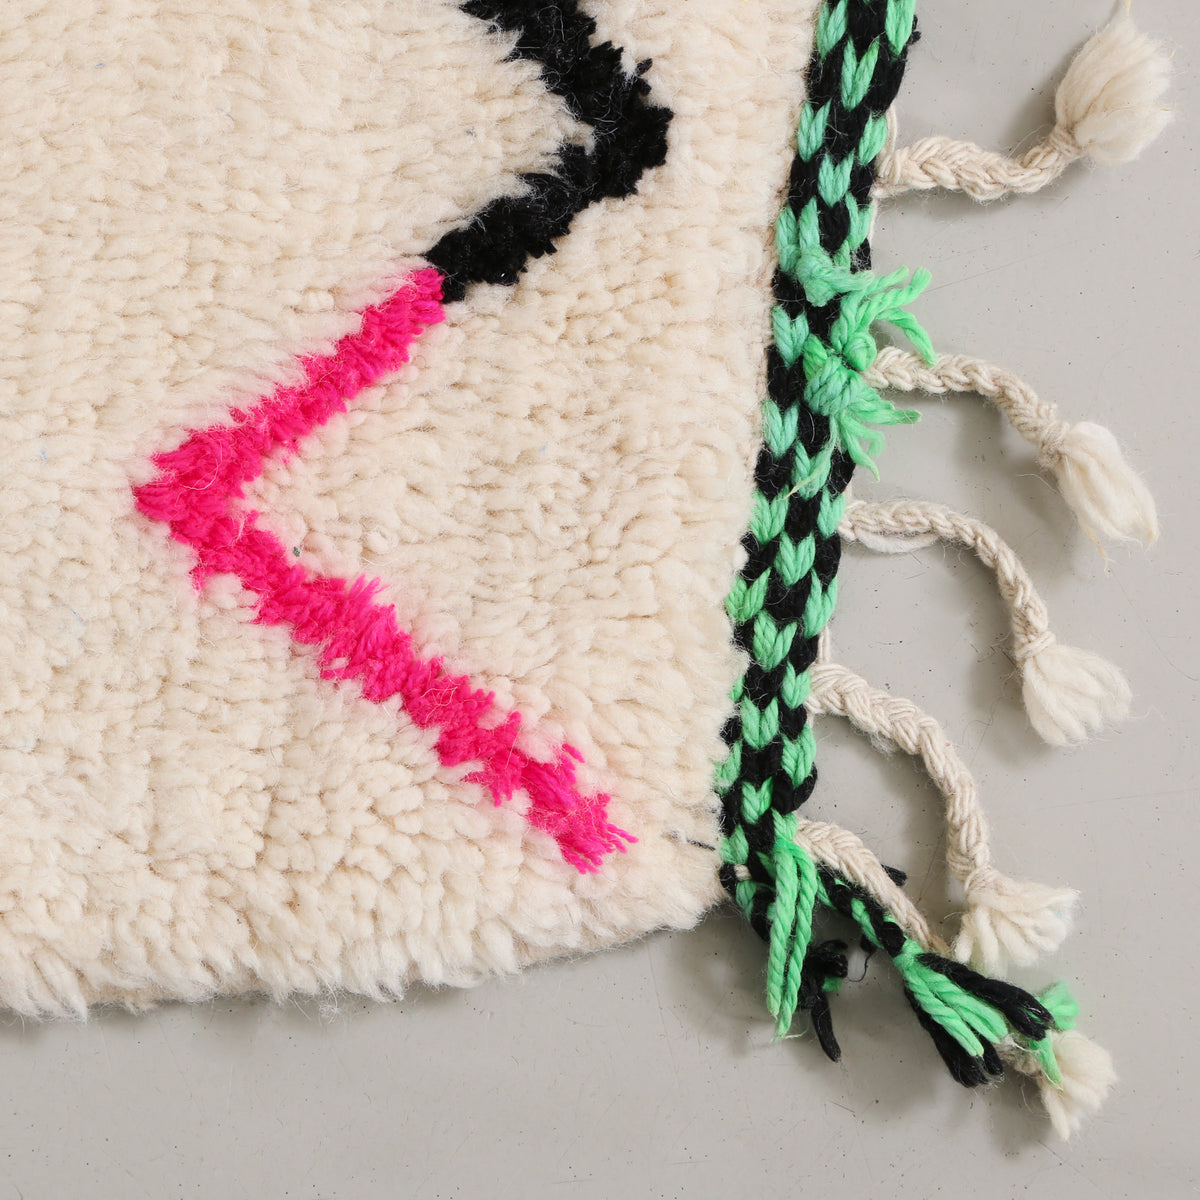 angolo di un tappeto in lana color avorio con  riga spezzata rosa fluo e nera e frangia a scacchi verde e nera